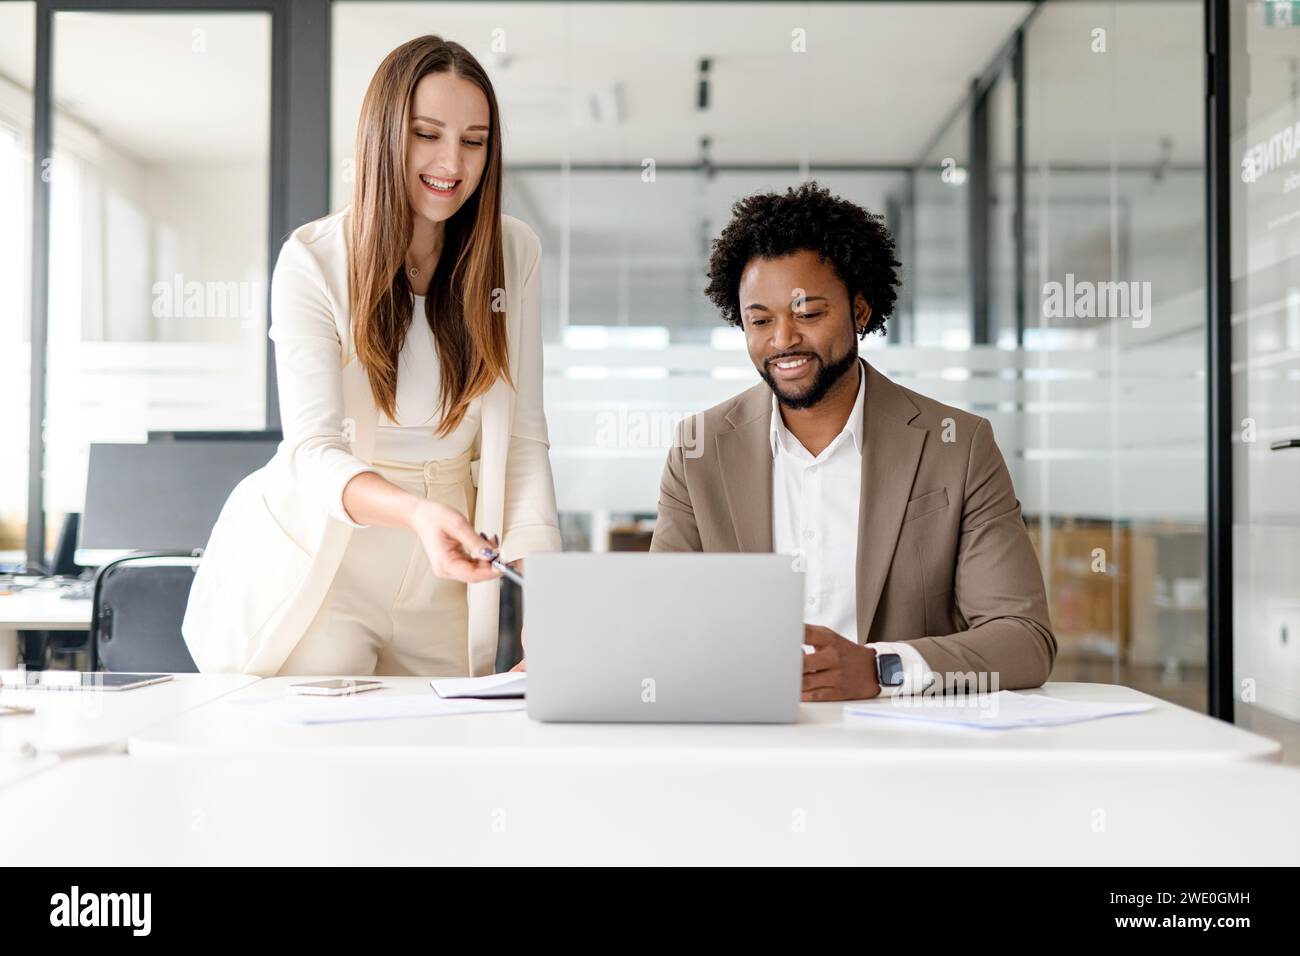 Eine Frau zeigt auf einen Laptop-Bildschirm, während sie mit einem männlichen Kollegen über Inhalte spricht und interaktive Kommunikation und Teamarbeit in einem professionellen Kontext veranschaulicht. Stockfoto